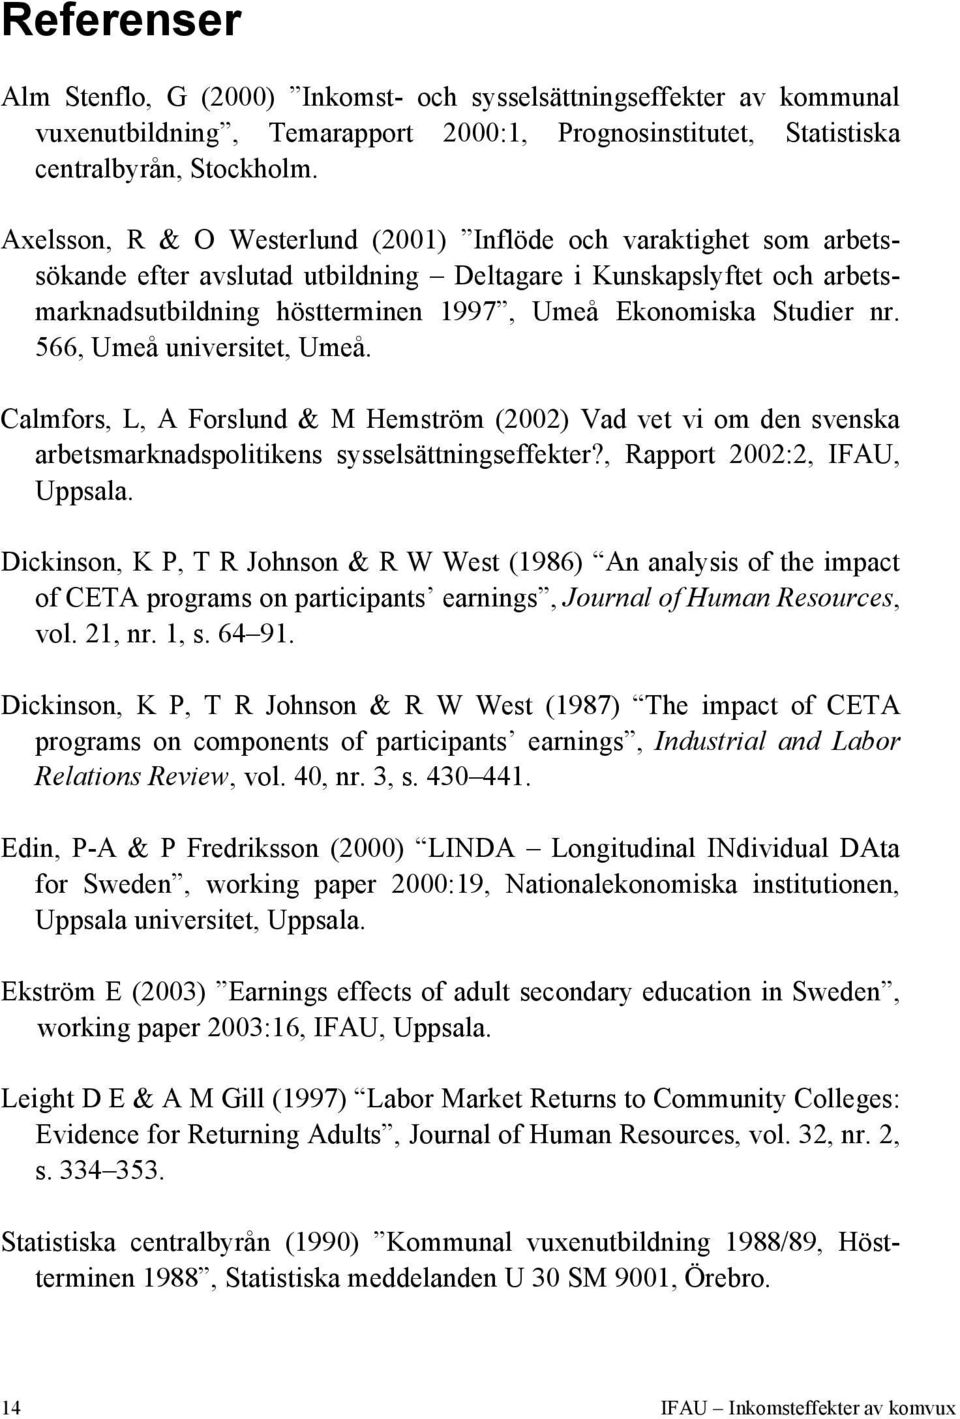 Studier nr. 566, Umeå universitet, Umeå. Calmfors, L, A Forslund & M Hemström (2002) Vad vet vi om den svenska arbetsmarknadspolitikens sysselsättningseffekter?, Rapport 2002:2, IFAU, Uppsala.